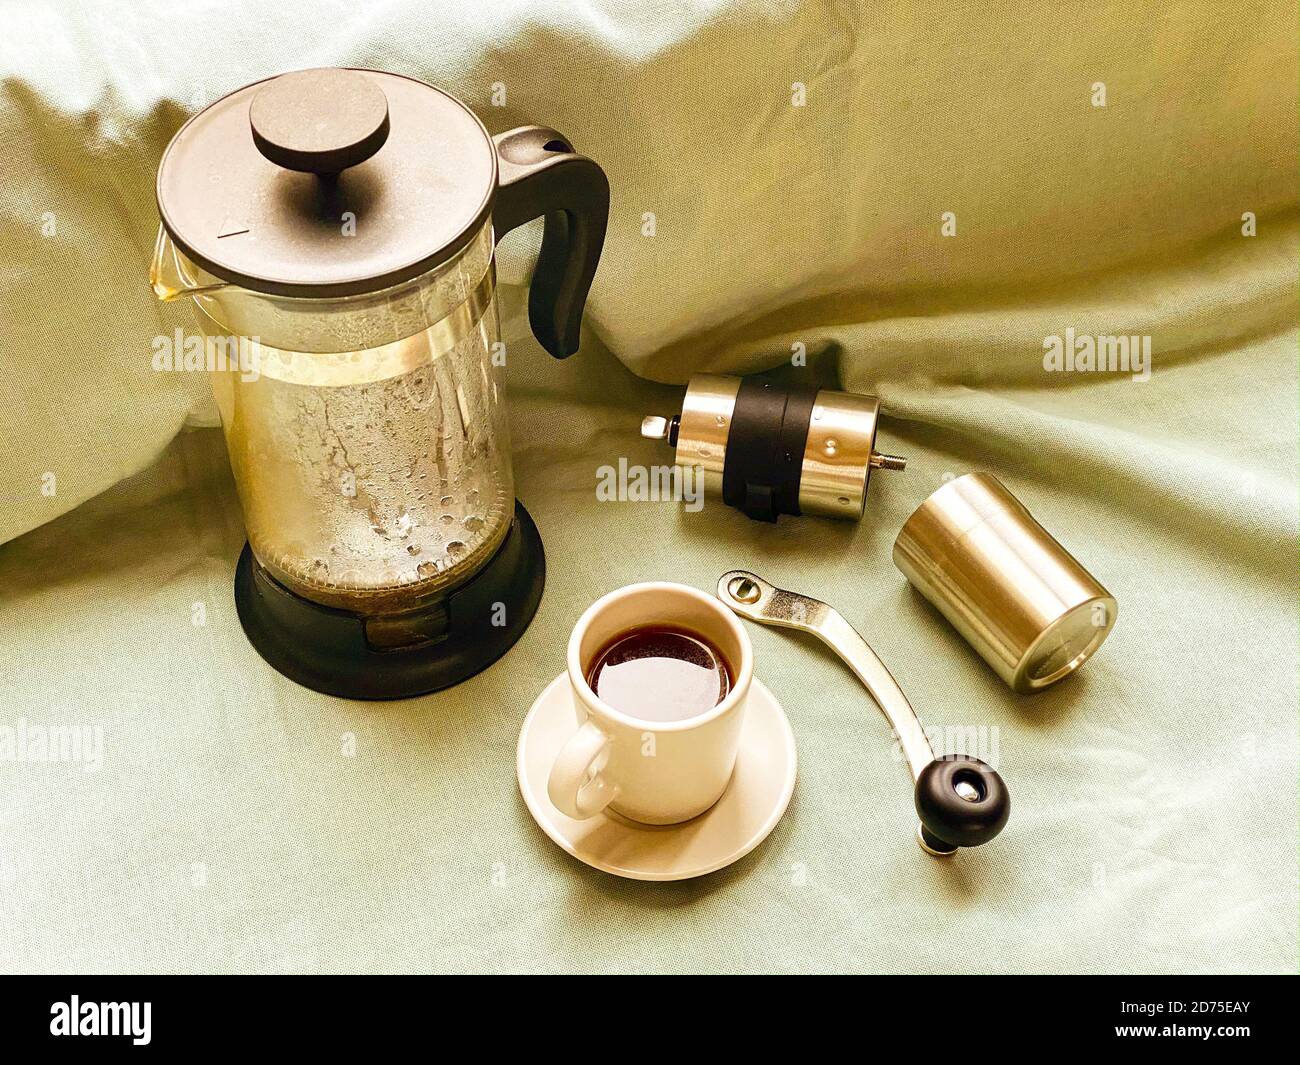 Französische Presse, Kaffeetasse mit dunklem heißem Espresso auf Untertasse und kleine Kaffeemühle aus Metall auf hellgrünem Stofftuch. Stillleben. Herstellung von frischem Coff Stockfoto